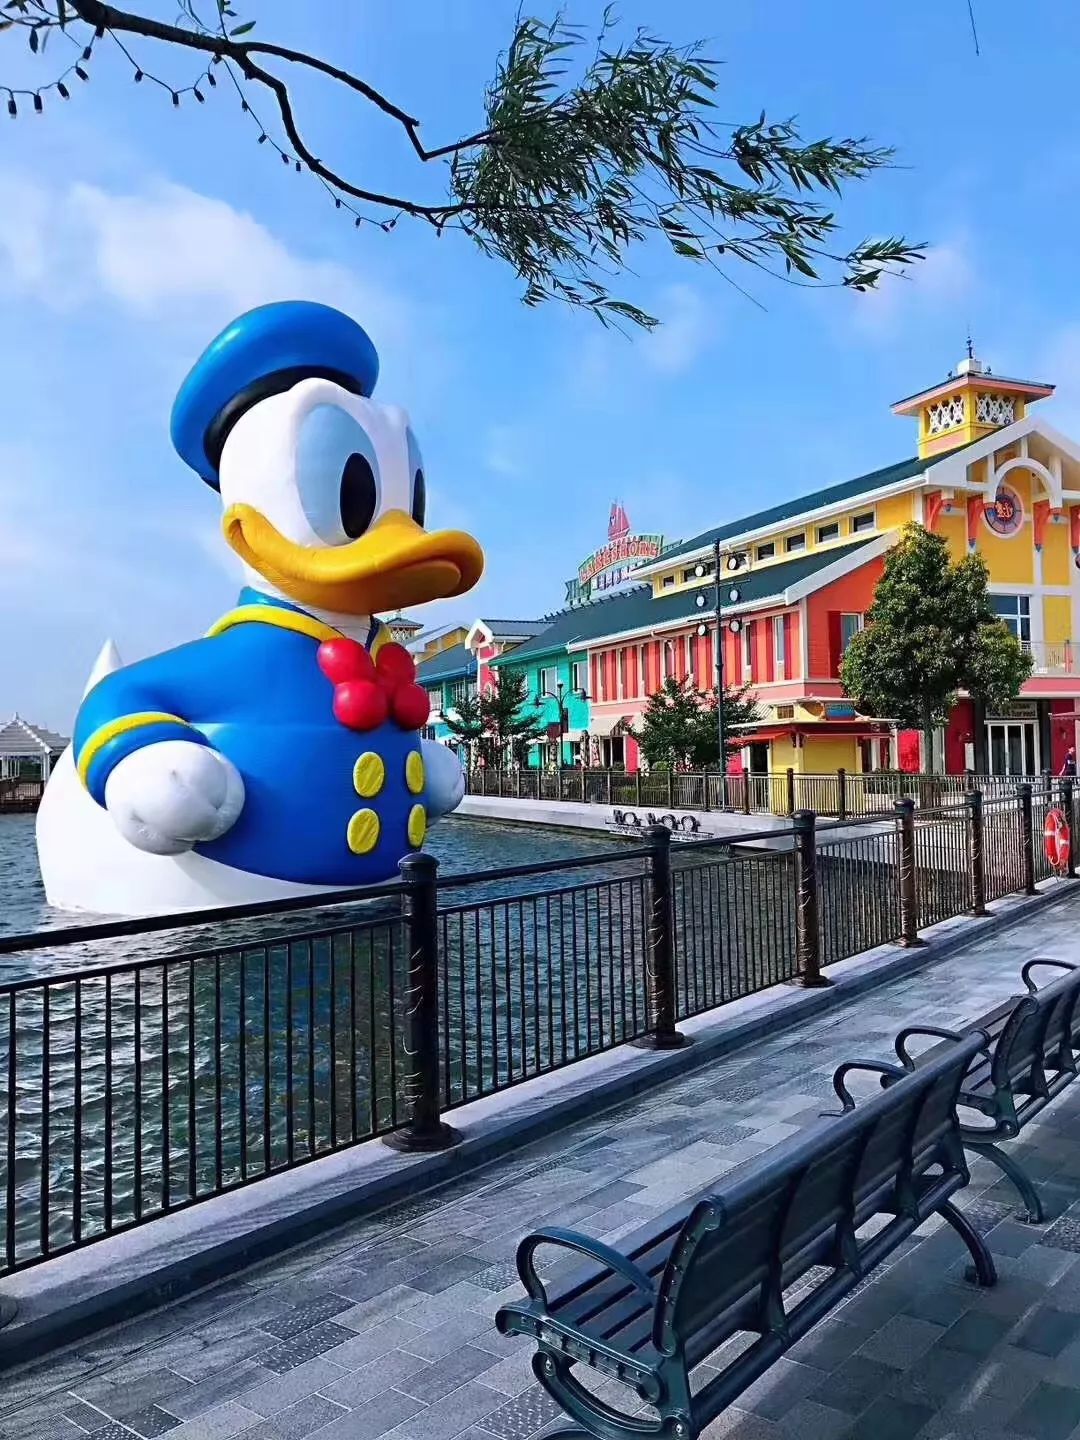 原来是巨型大可爱——巨型唐老鸭登陆上海迪士尼小镇星愿湖啦!